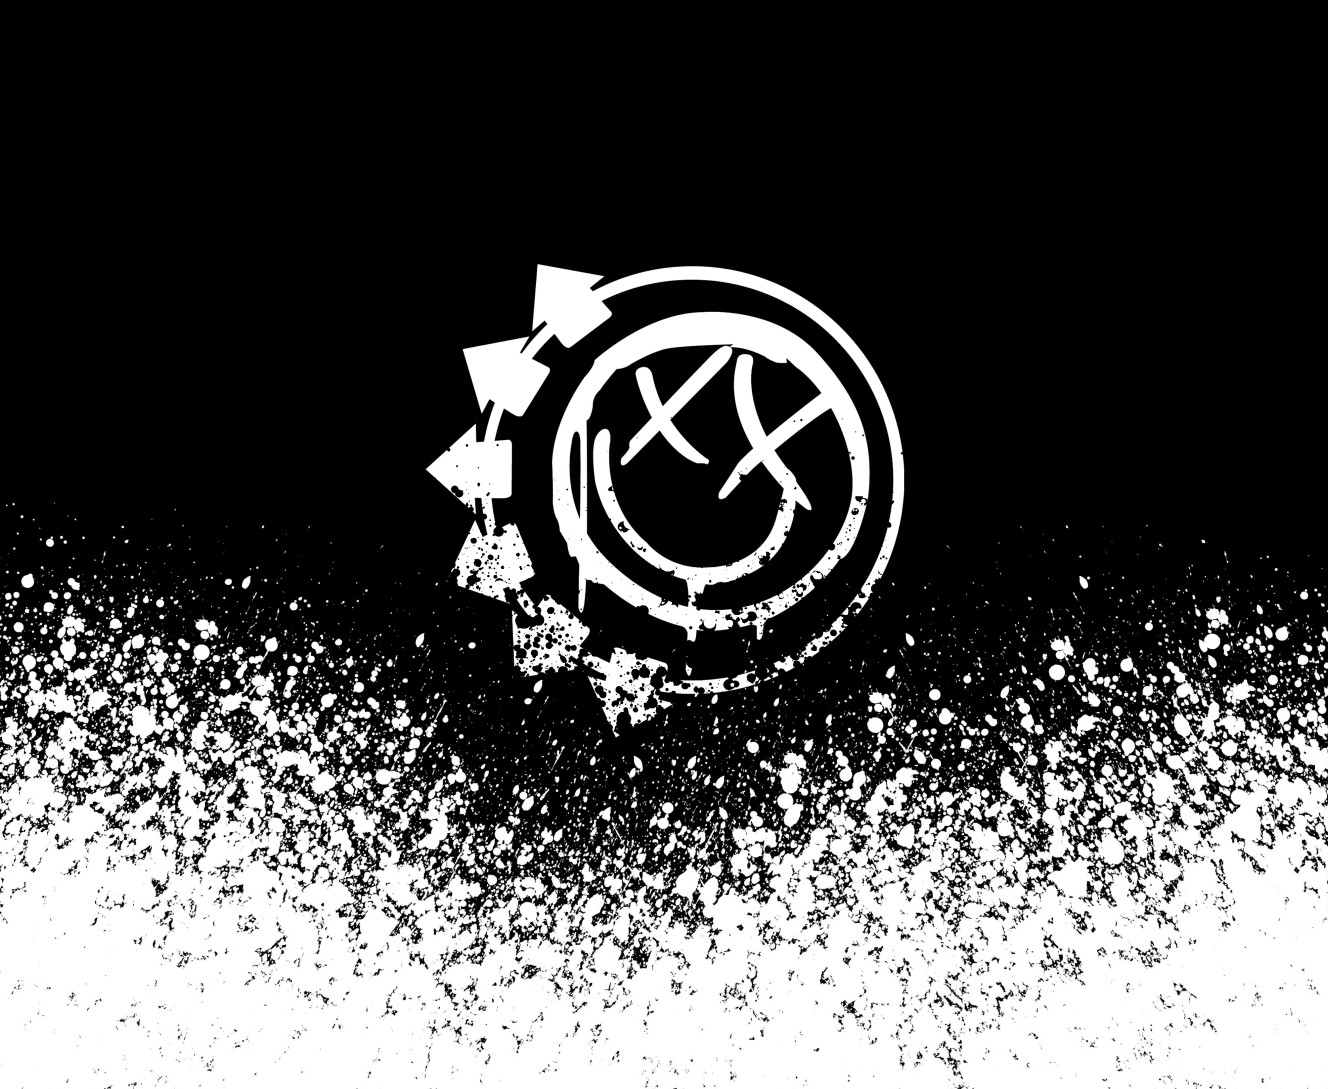 Blink-182 [9]